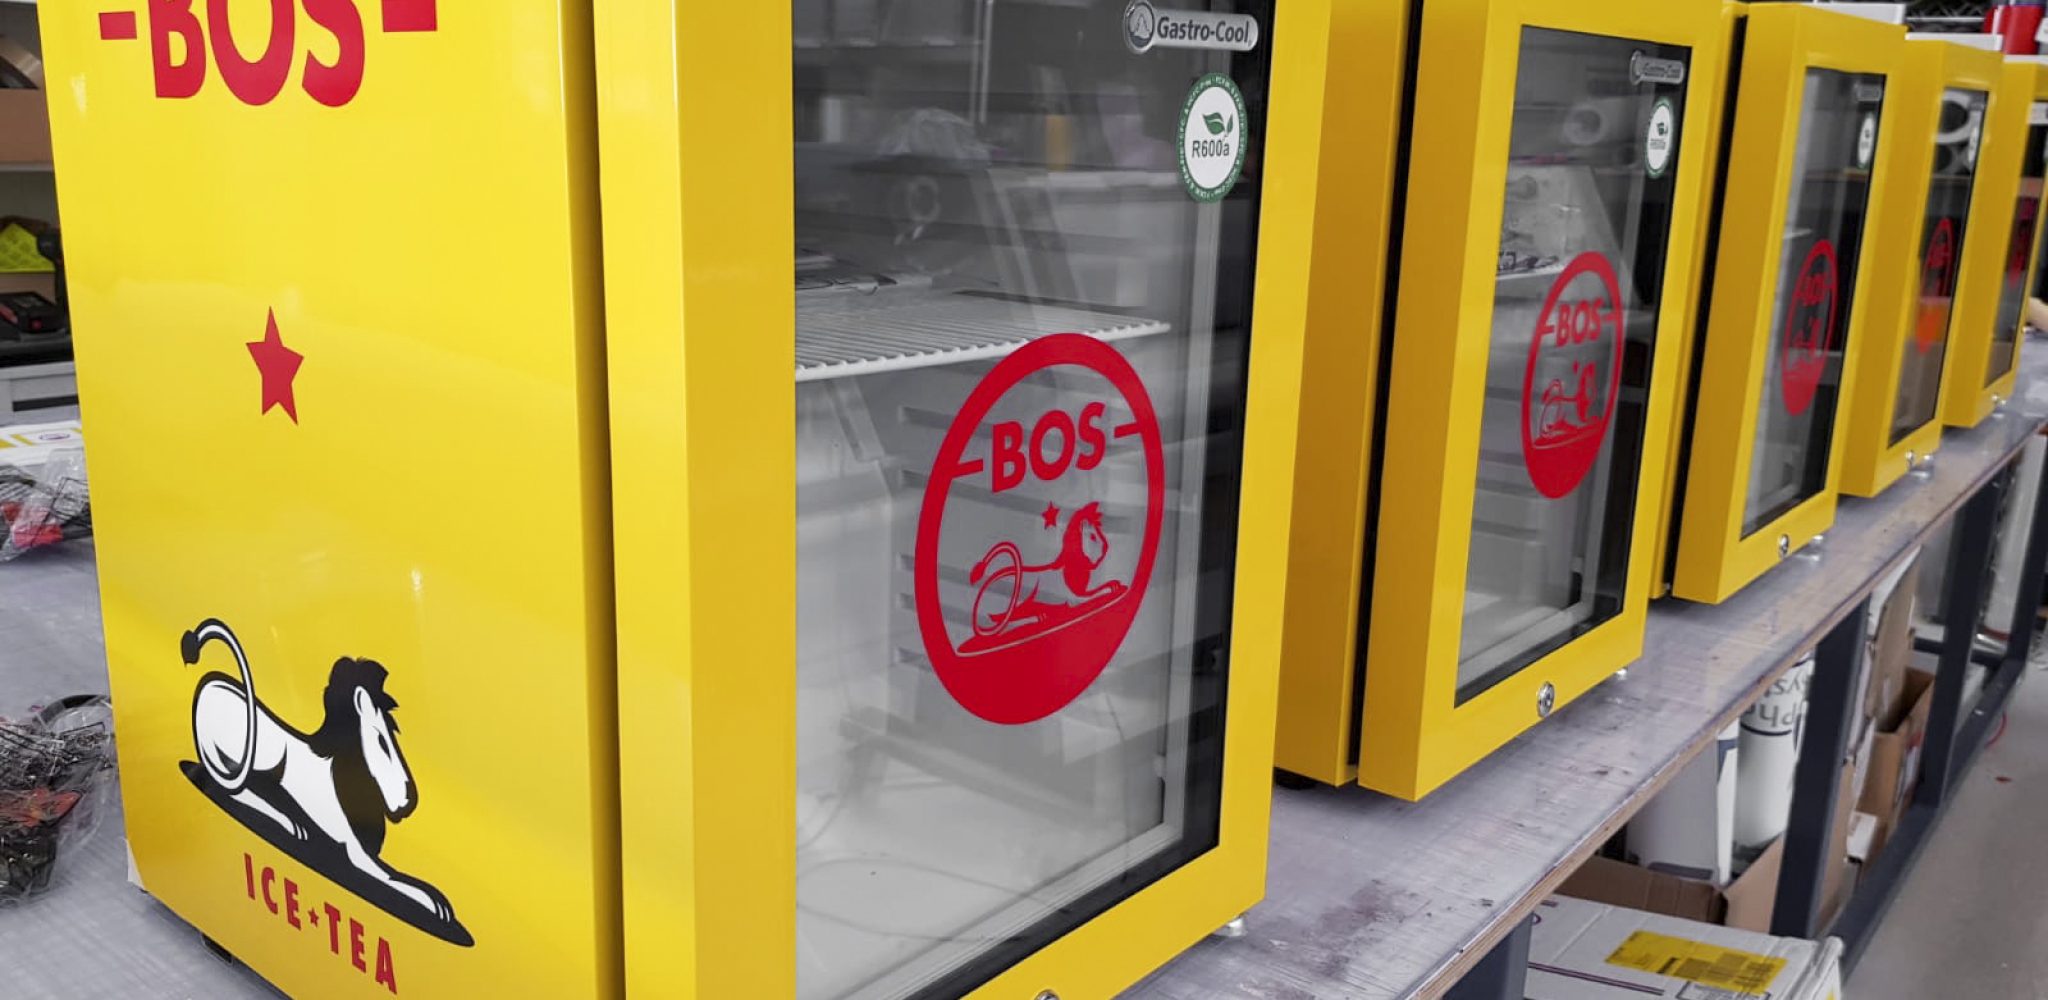 Machine sticker koelkast bos icetea geel rood